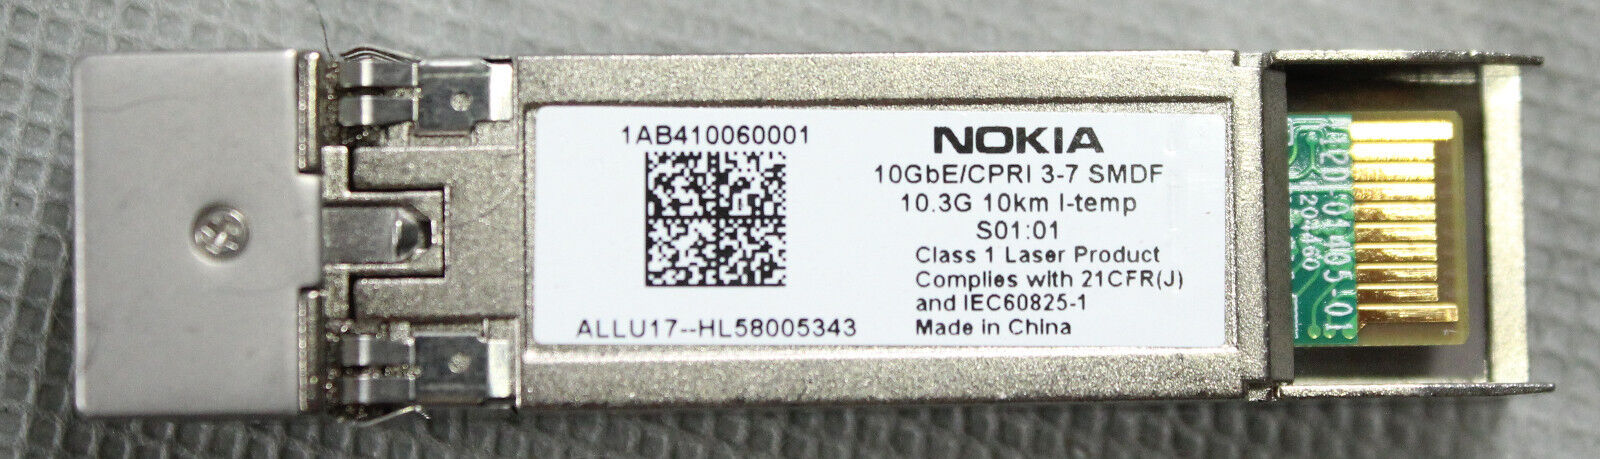 Nokia CPRI 3-7 9.8304G 10km I-temp 1AB410060001 SFP Transciever